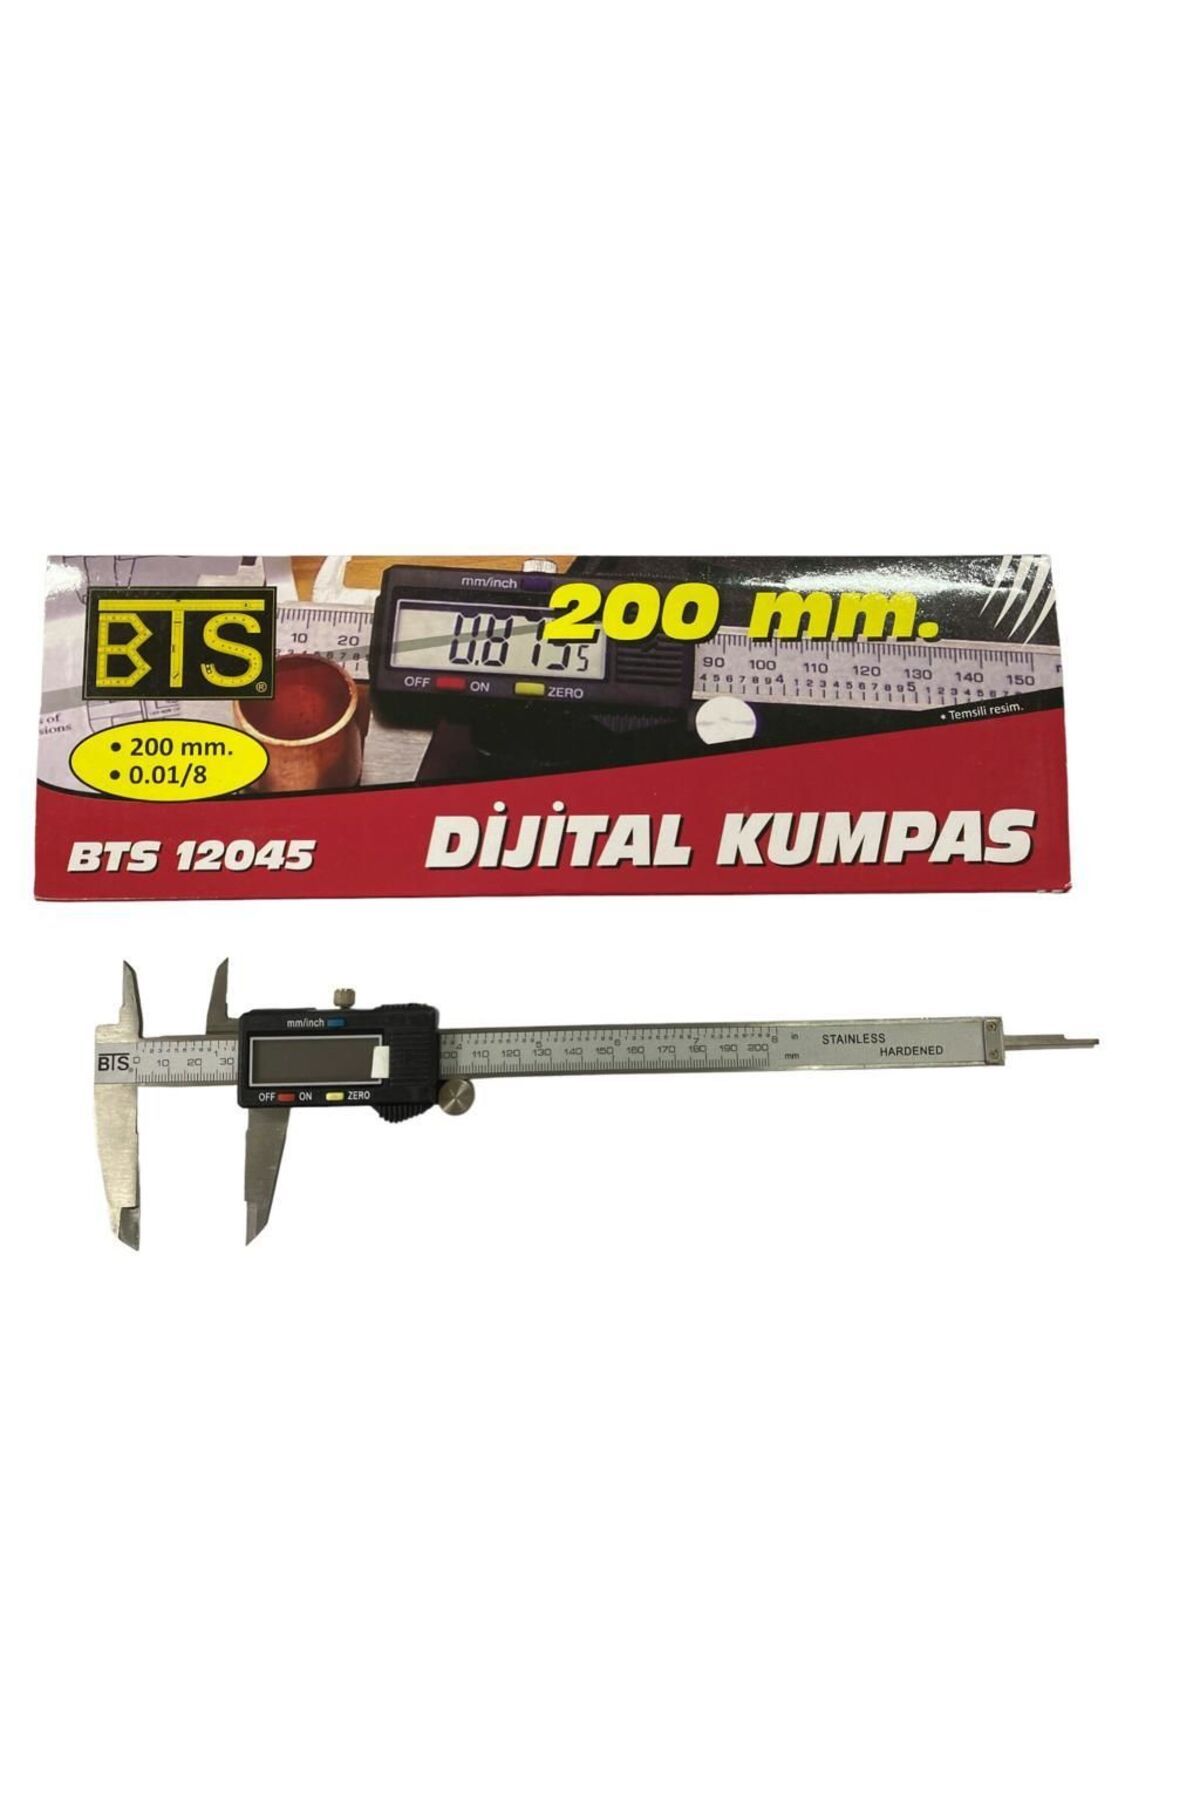 BTS 12045 Dijital Kumpas 200 Mm